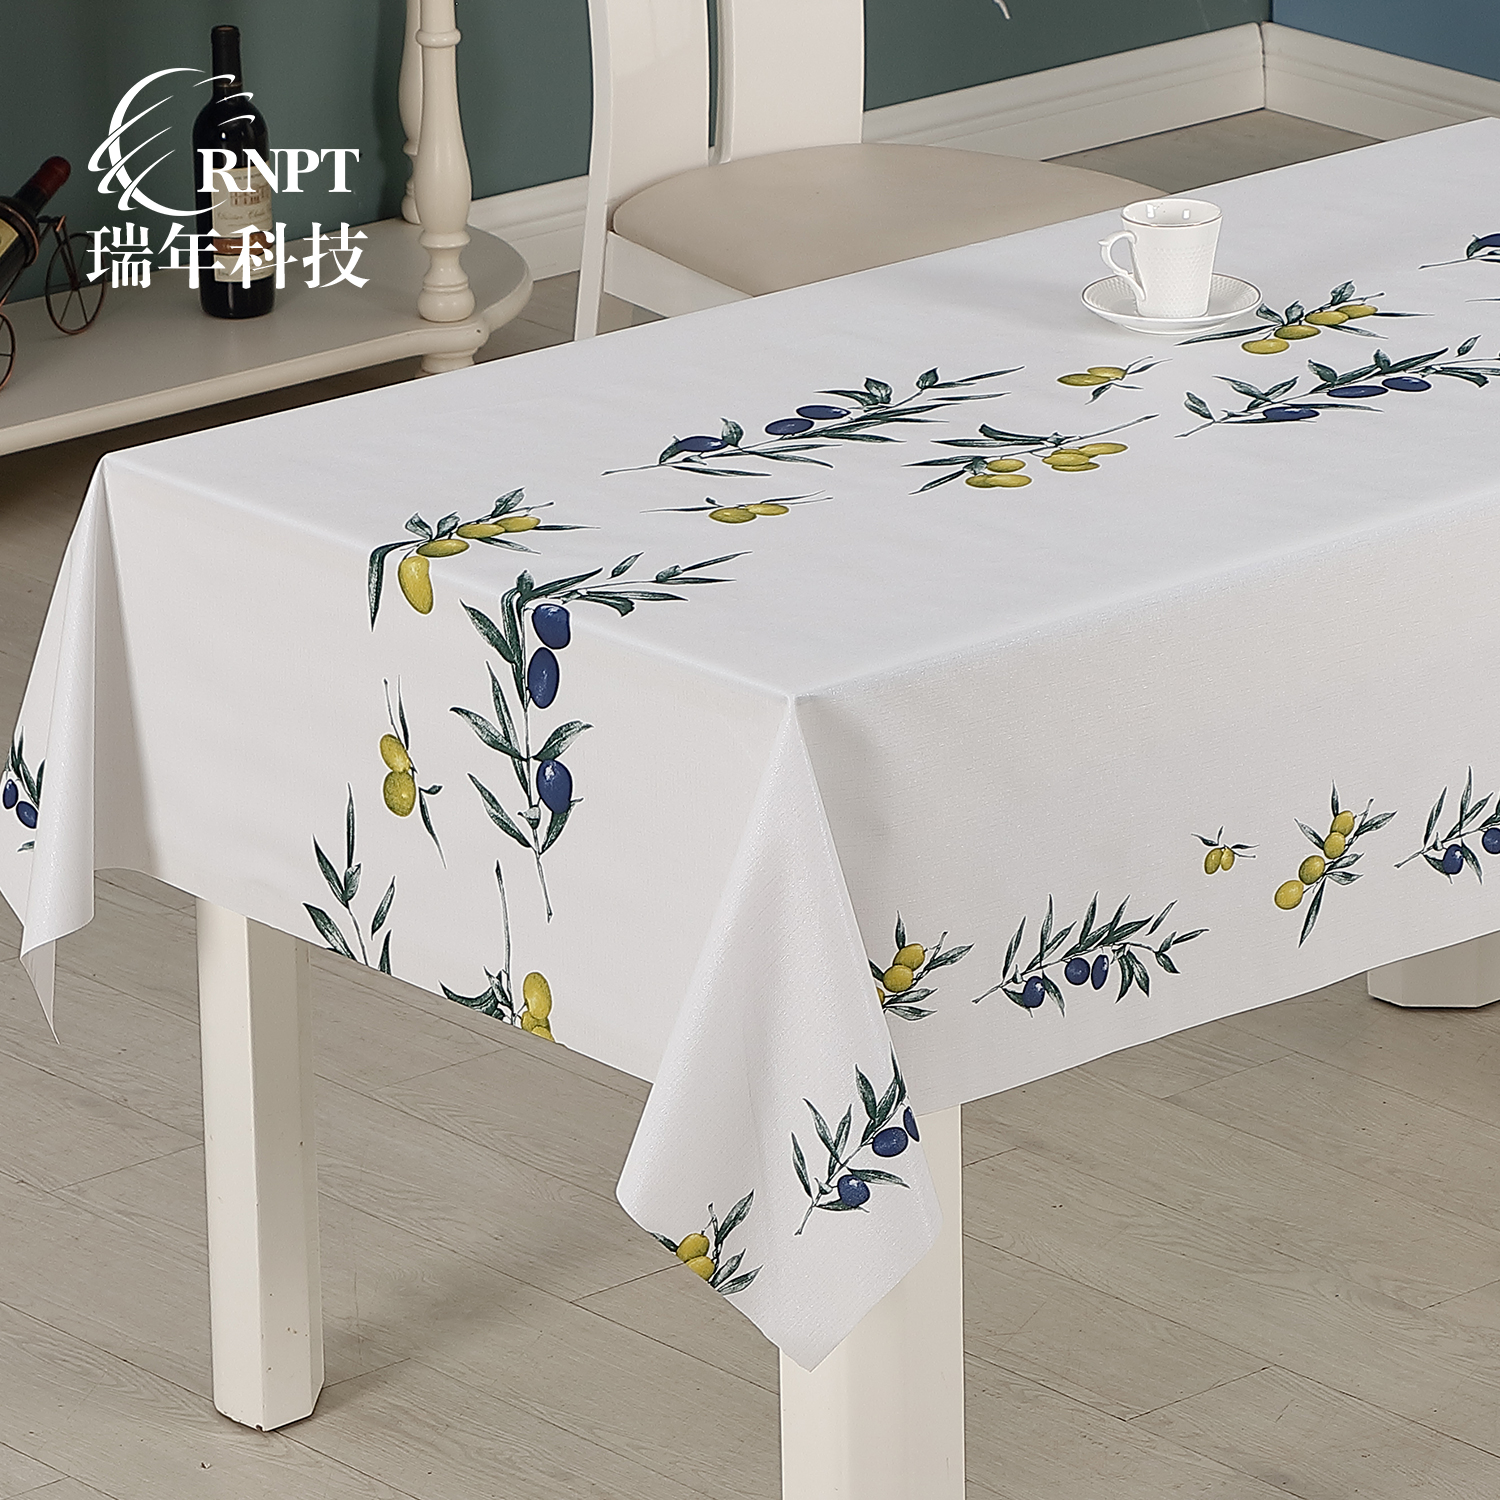 简约防水台布RNHS瑞年 厂家直销简约防水台布PVC塑料桌布欧式印花餐桌布